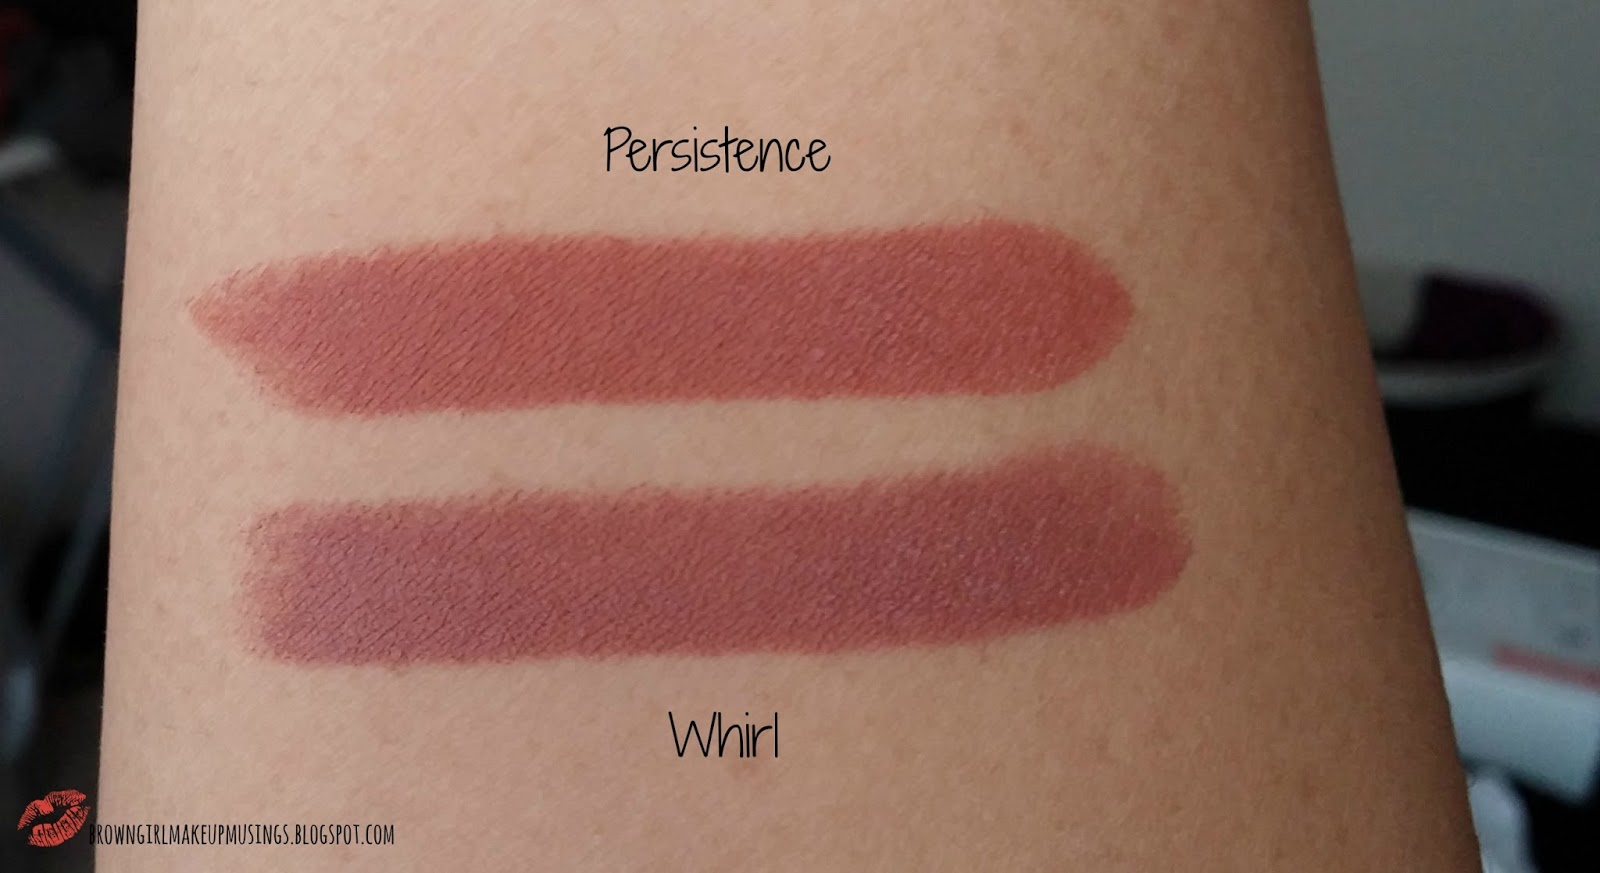 à¸à¸¥à¸à¸²à¸£à¸à¹à¸à¸«à¸²à¸£à¸¹à¸à¸�à¸²à¸à¸ªà¸³à¸«à¸£à¸±à¸ mac matte lipstick persistence